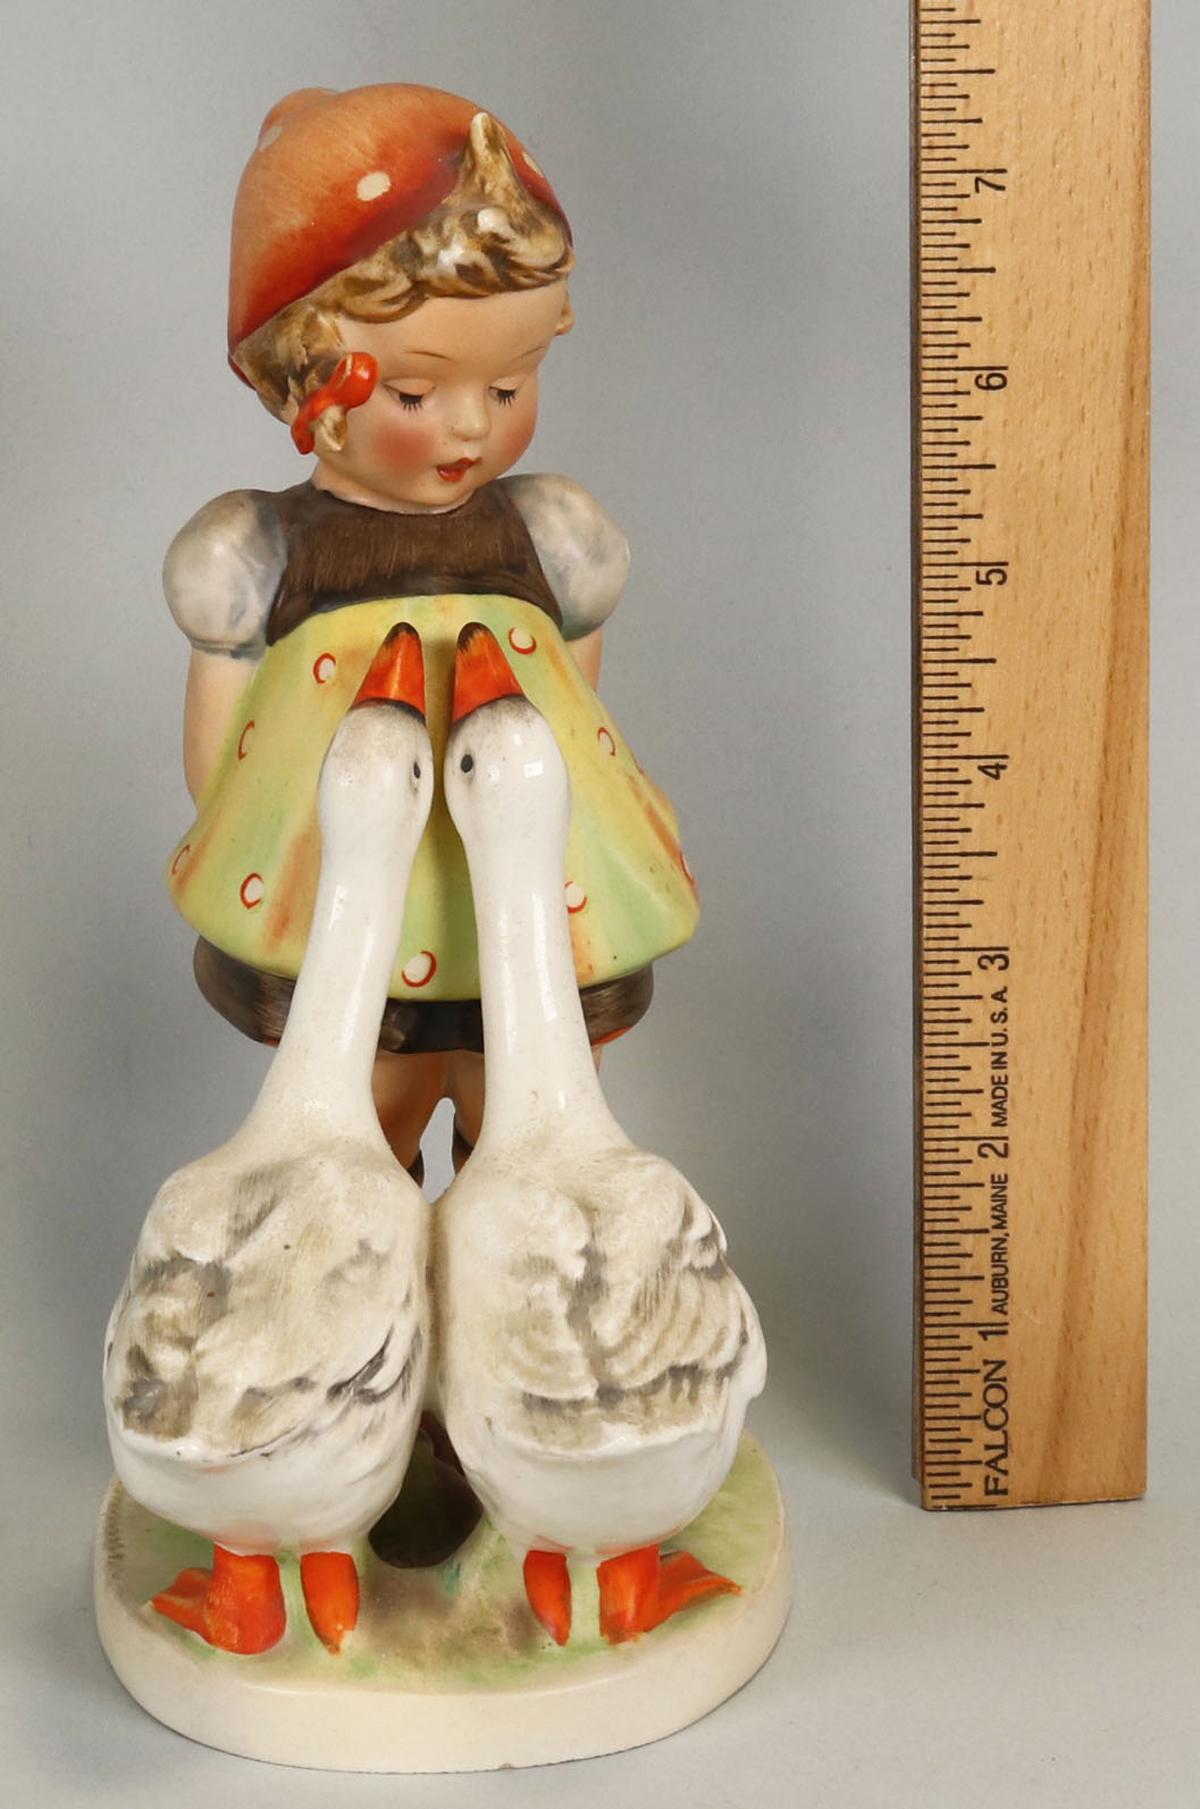 Vintage Hummel "Goose Girl" Figurine